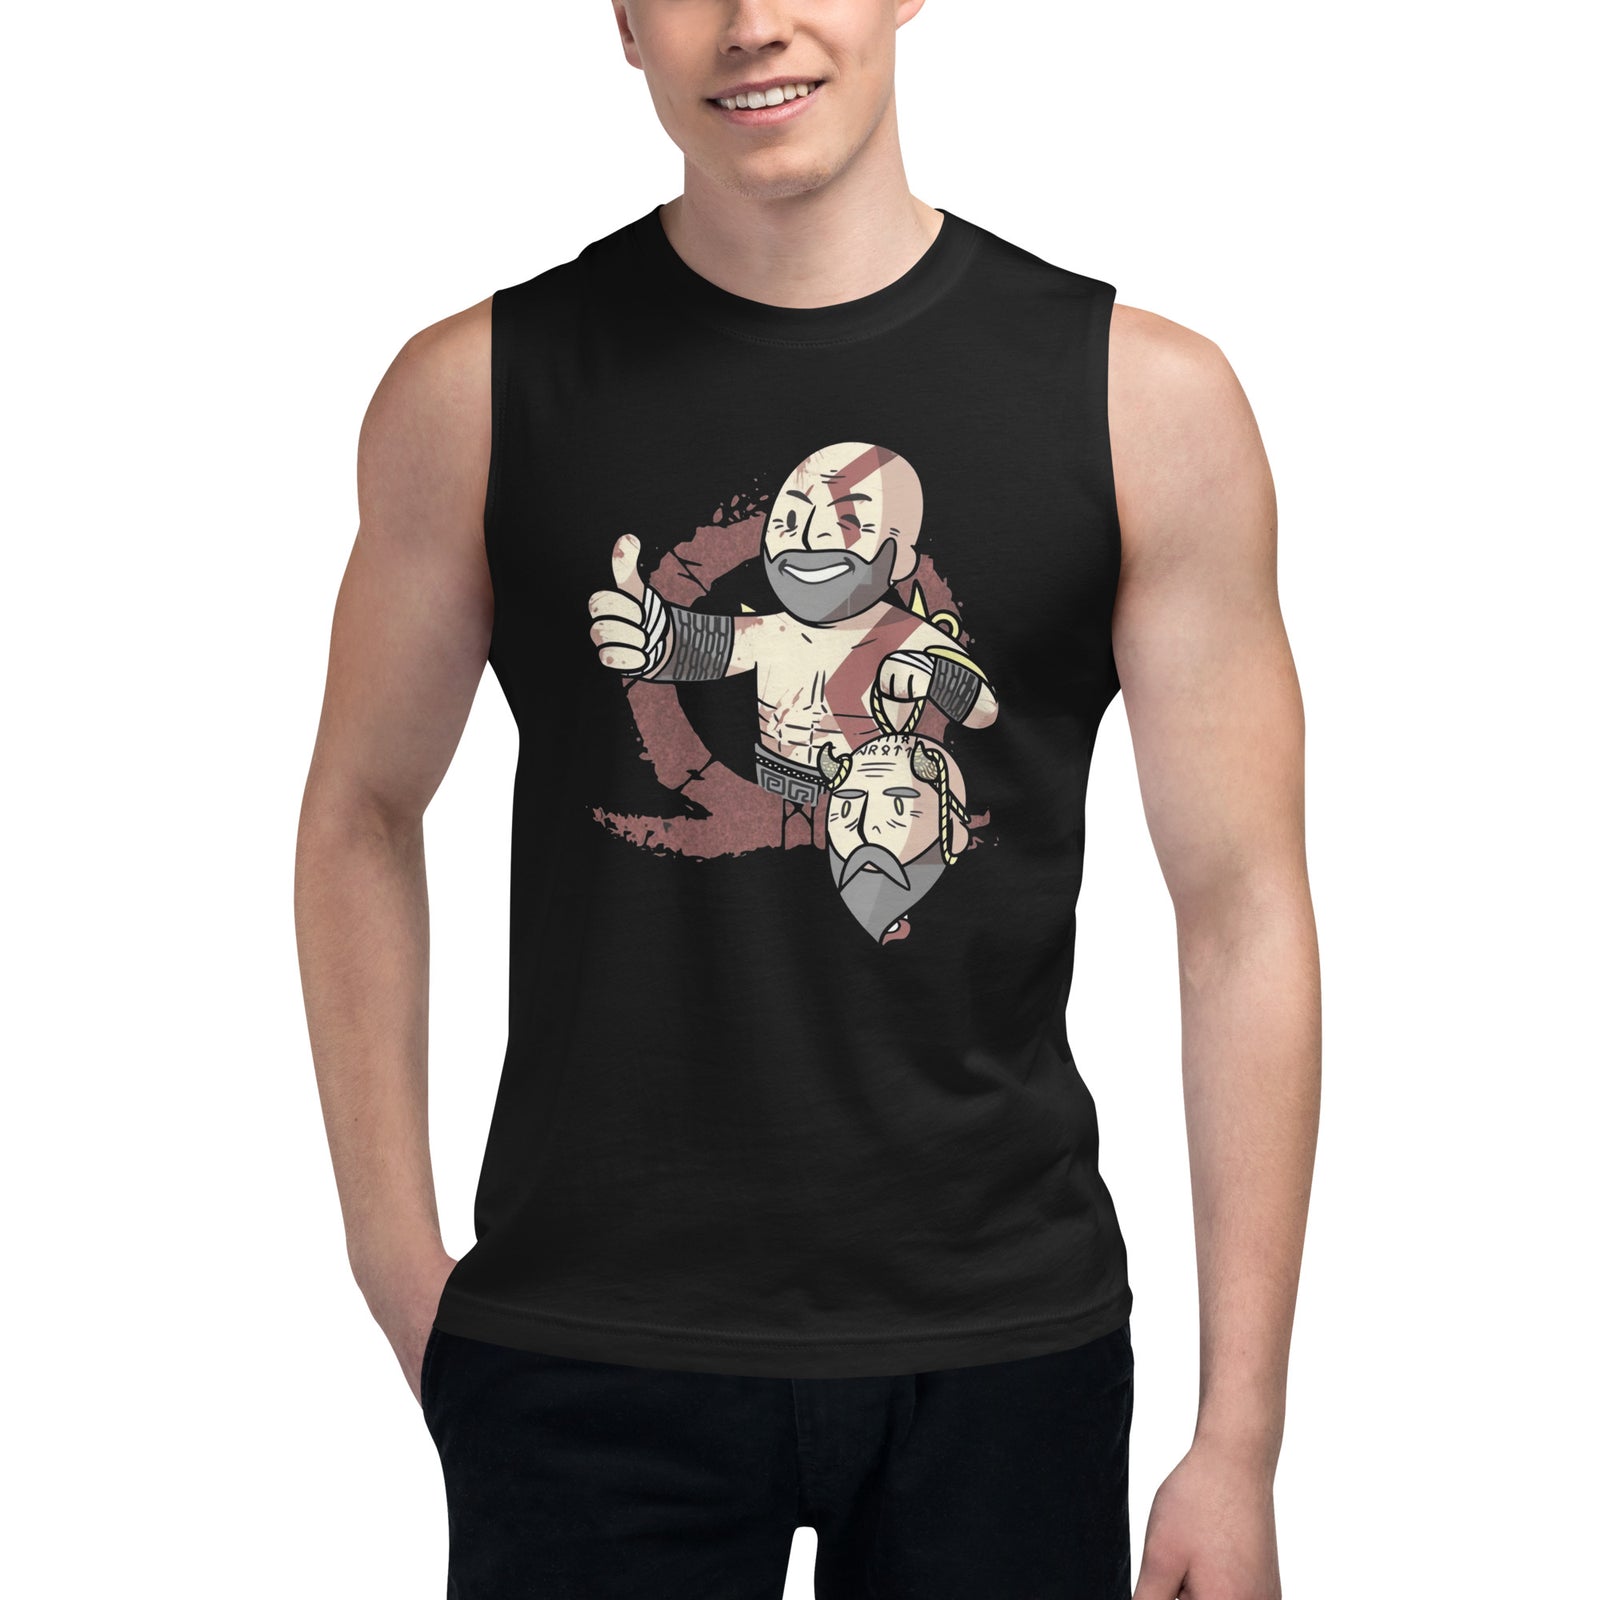 Camiseta sin mangas Kratos and Mimir, Disponible en la mejor tienda online para comprar tus artículos favoritos, la mejor Calidad, compra en Algoritmo! 